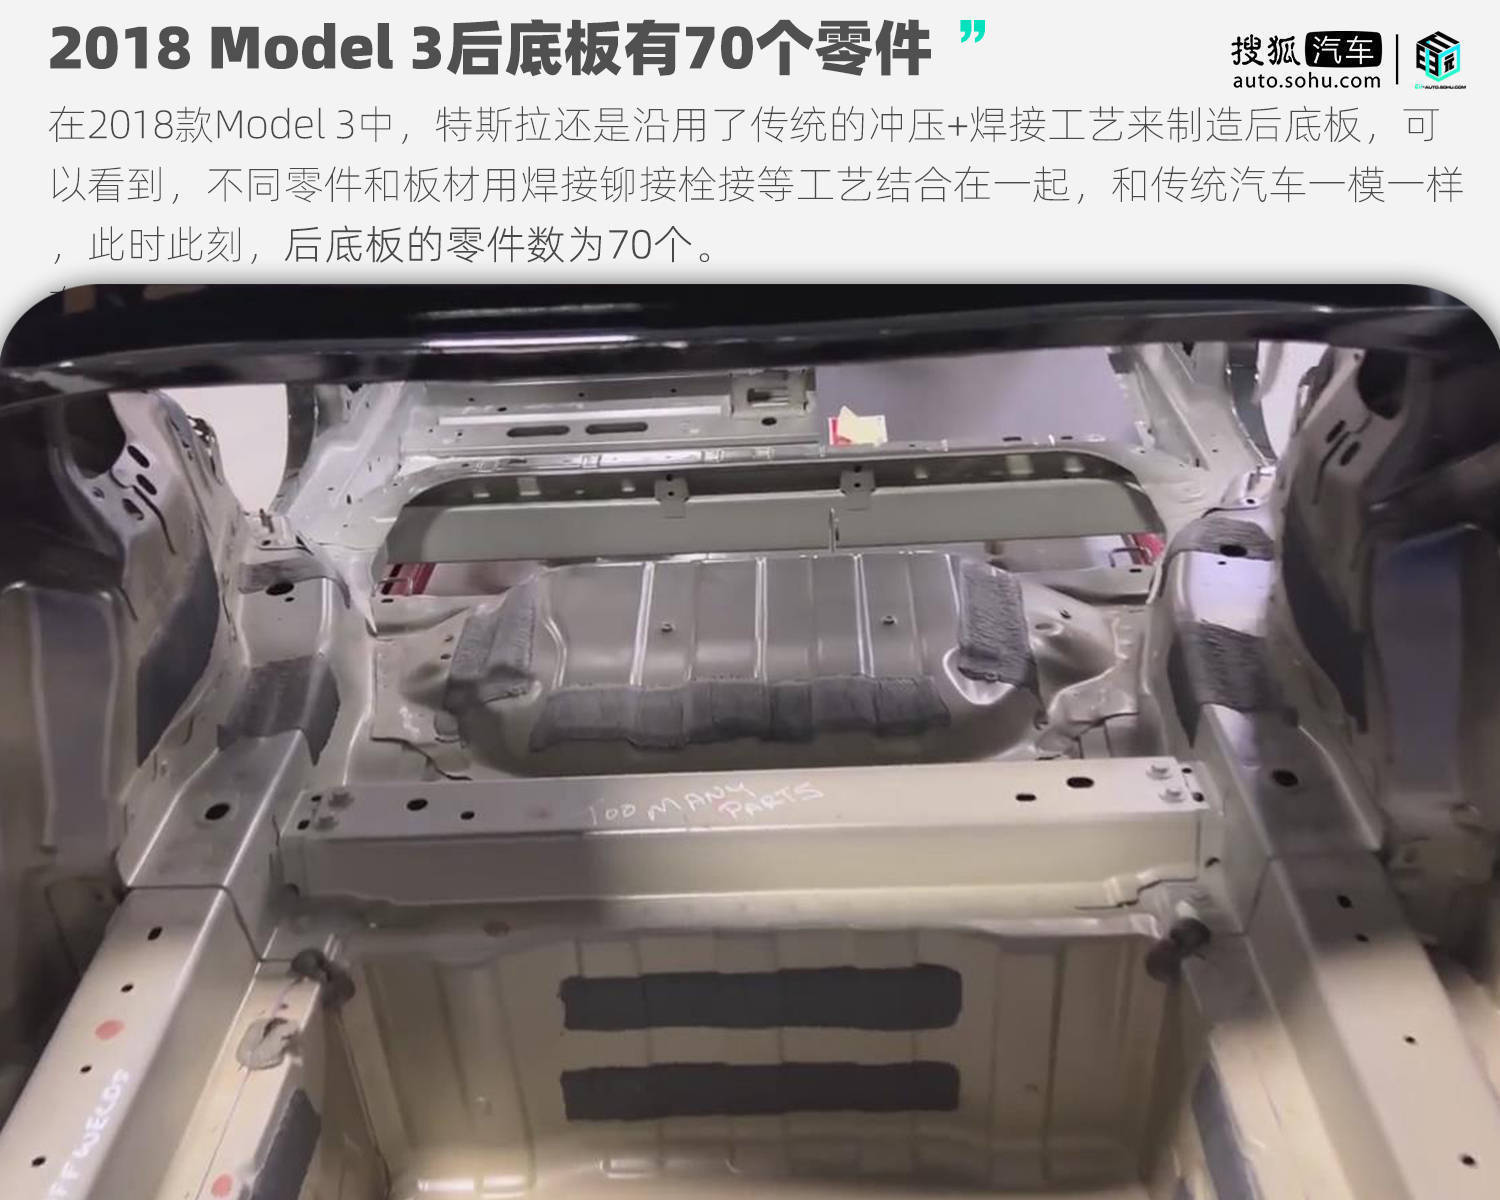 降本 40%，特斯拉上海工厂已采用一体化压铸技术实现快速铸型！ - 牛车网